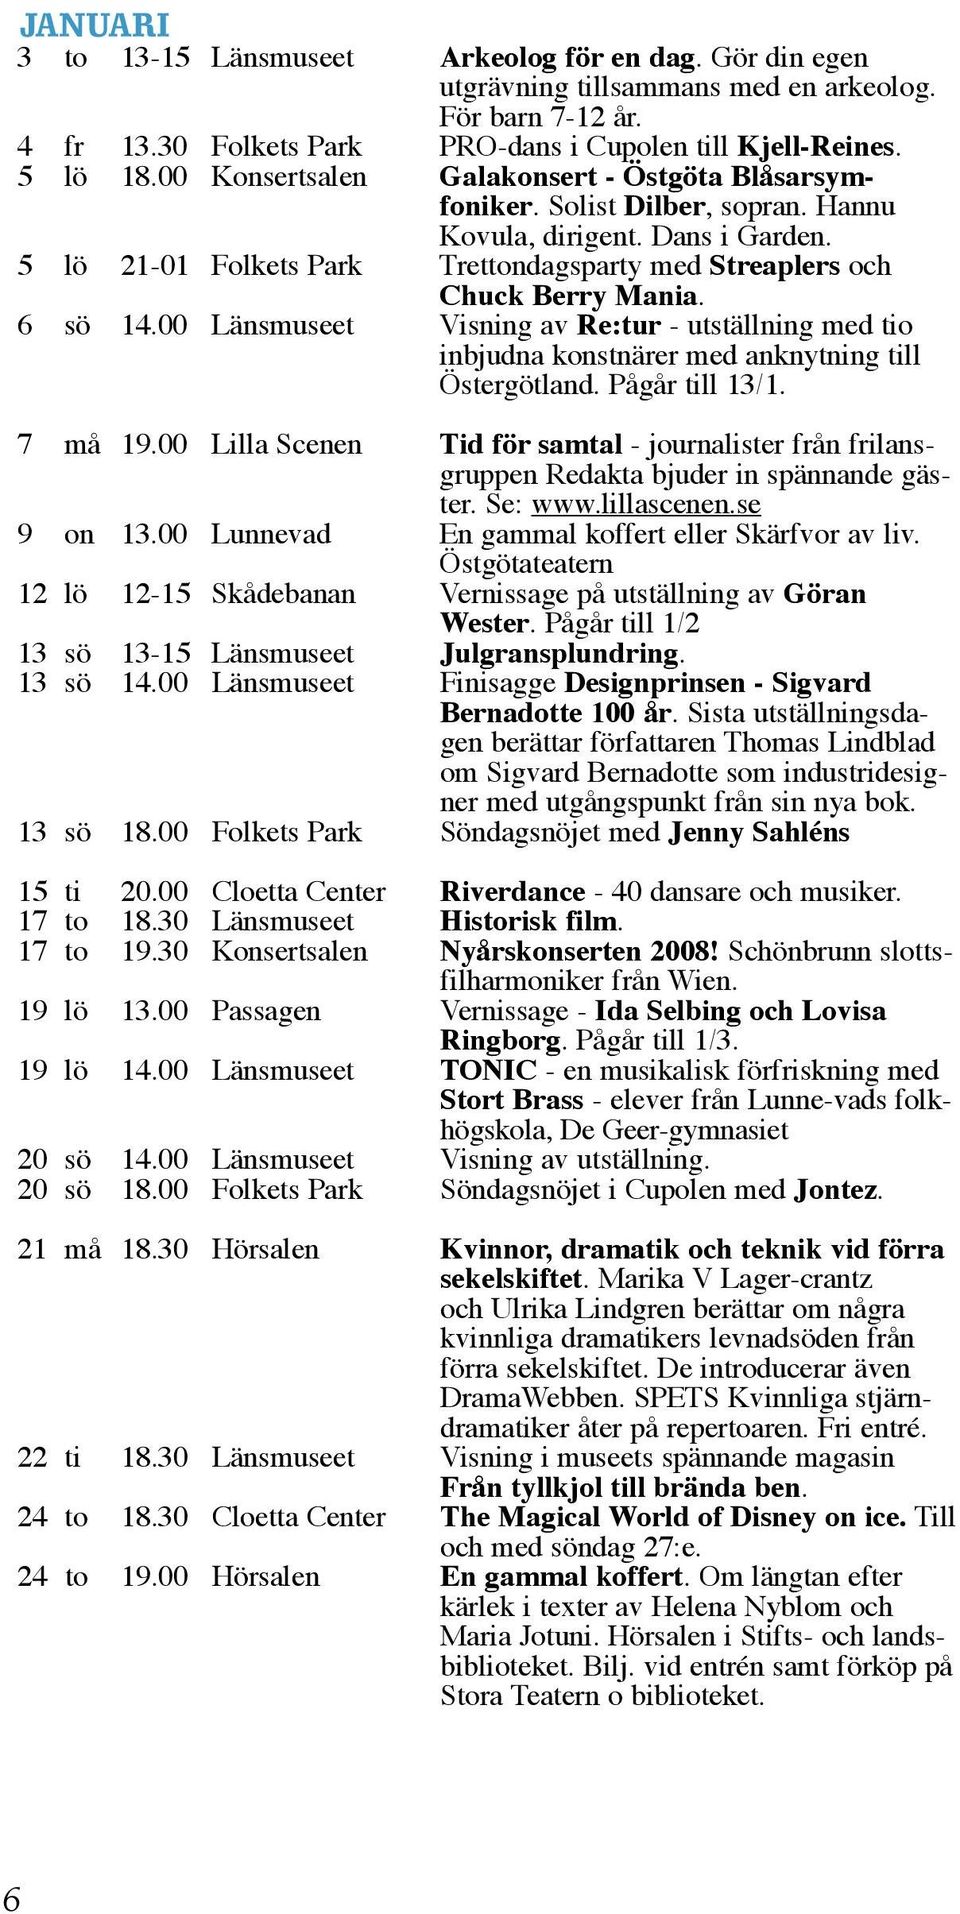 6 sö 14.00 Länsmuseet Visning av Re:tur - utställning med tio inbjudna konstnärer med anknytning till Östergötland. Pågår till 13/1. 7 må 19.